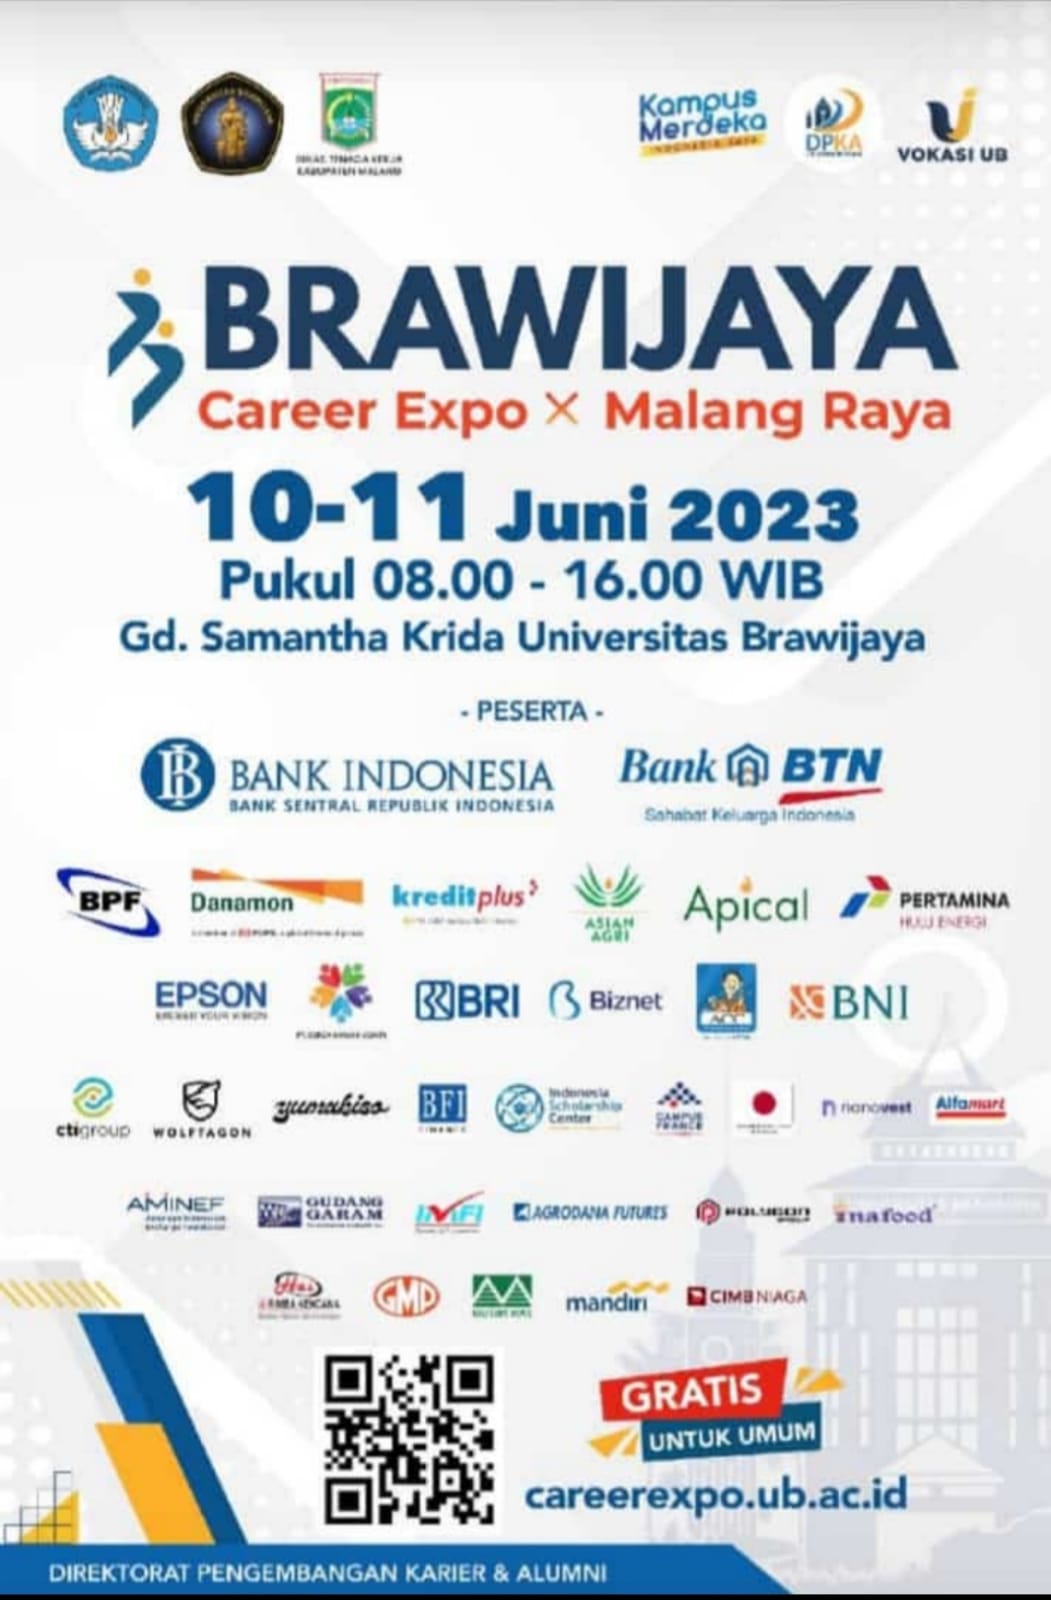 Brawijaya Career Expo